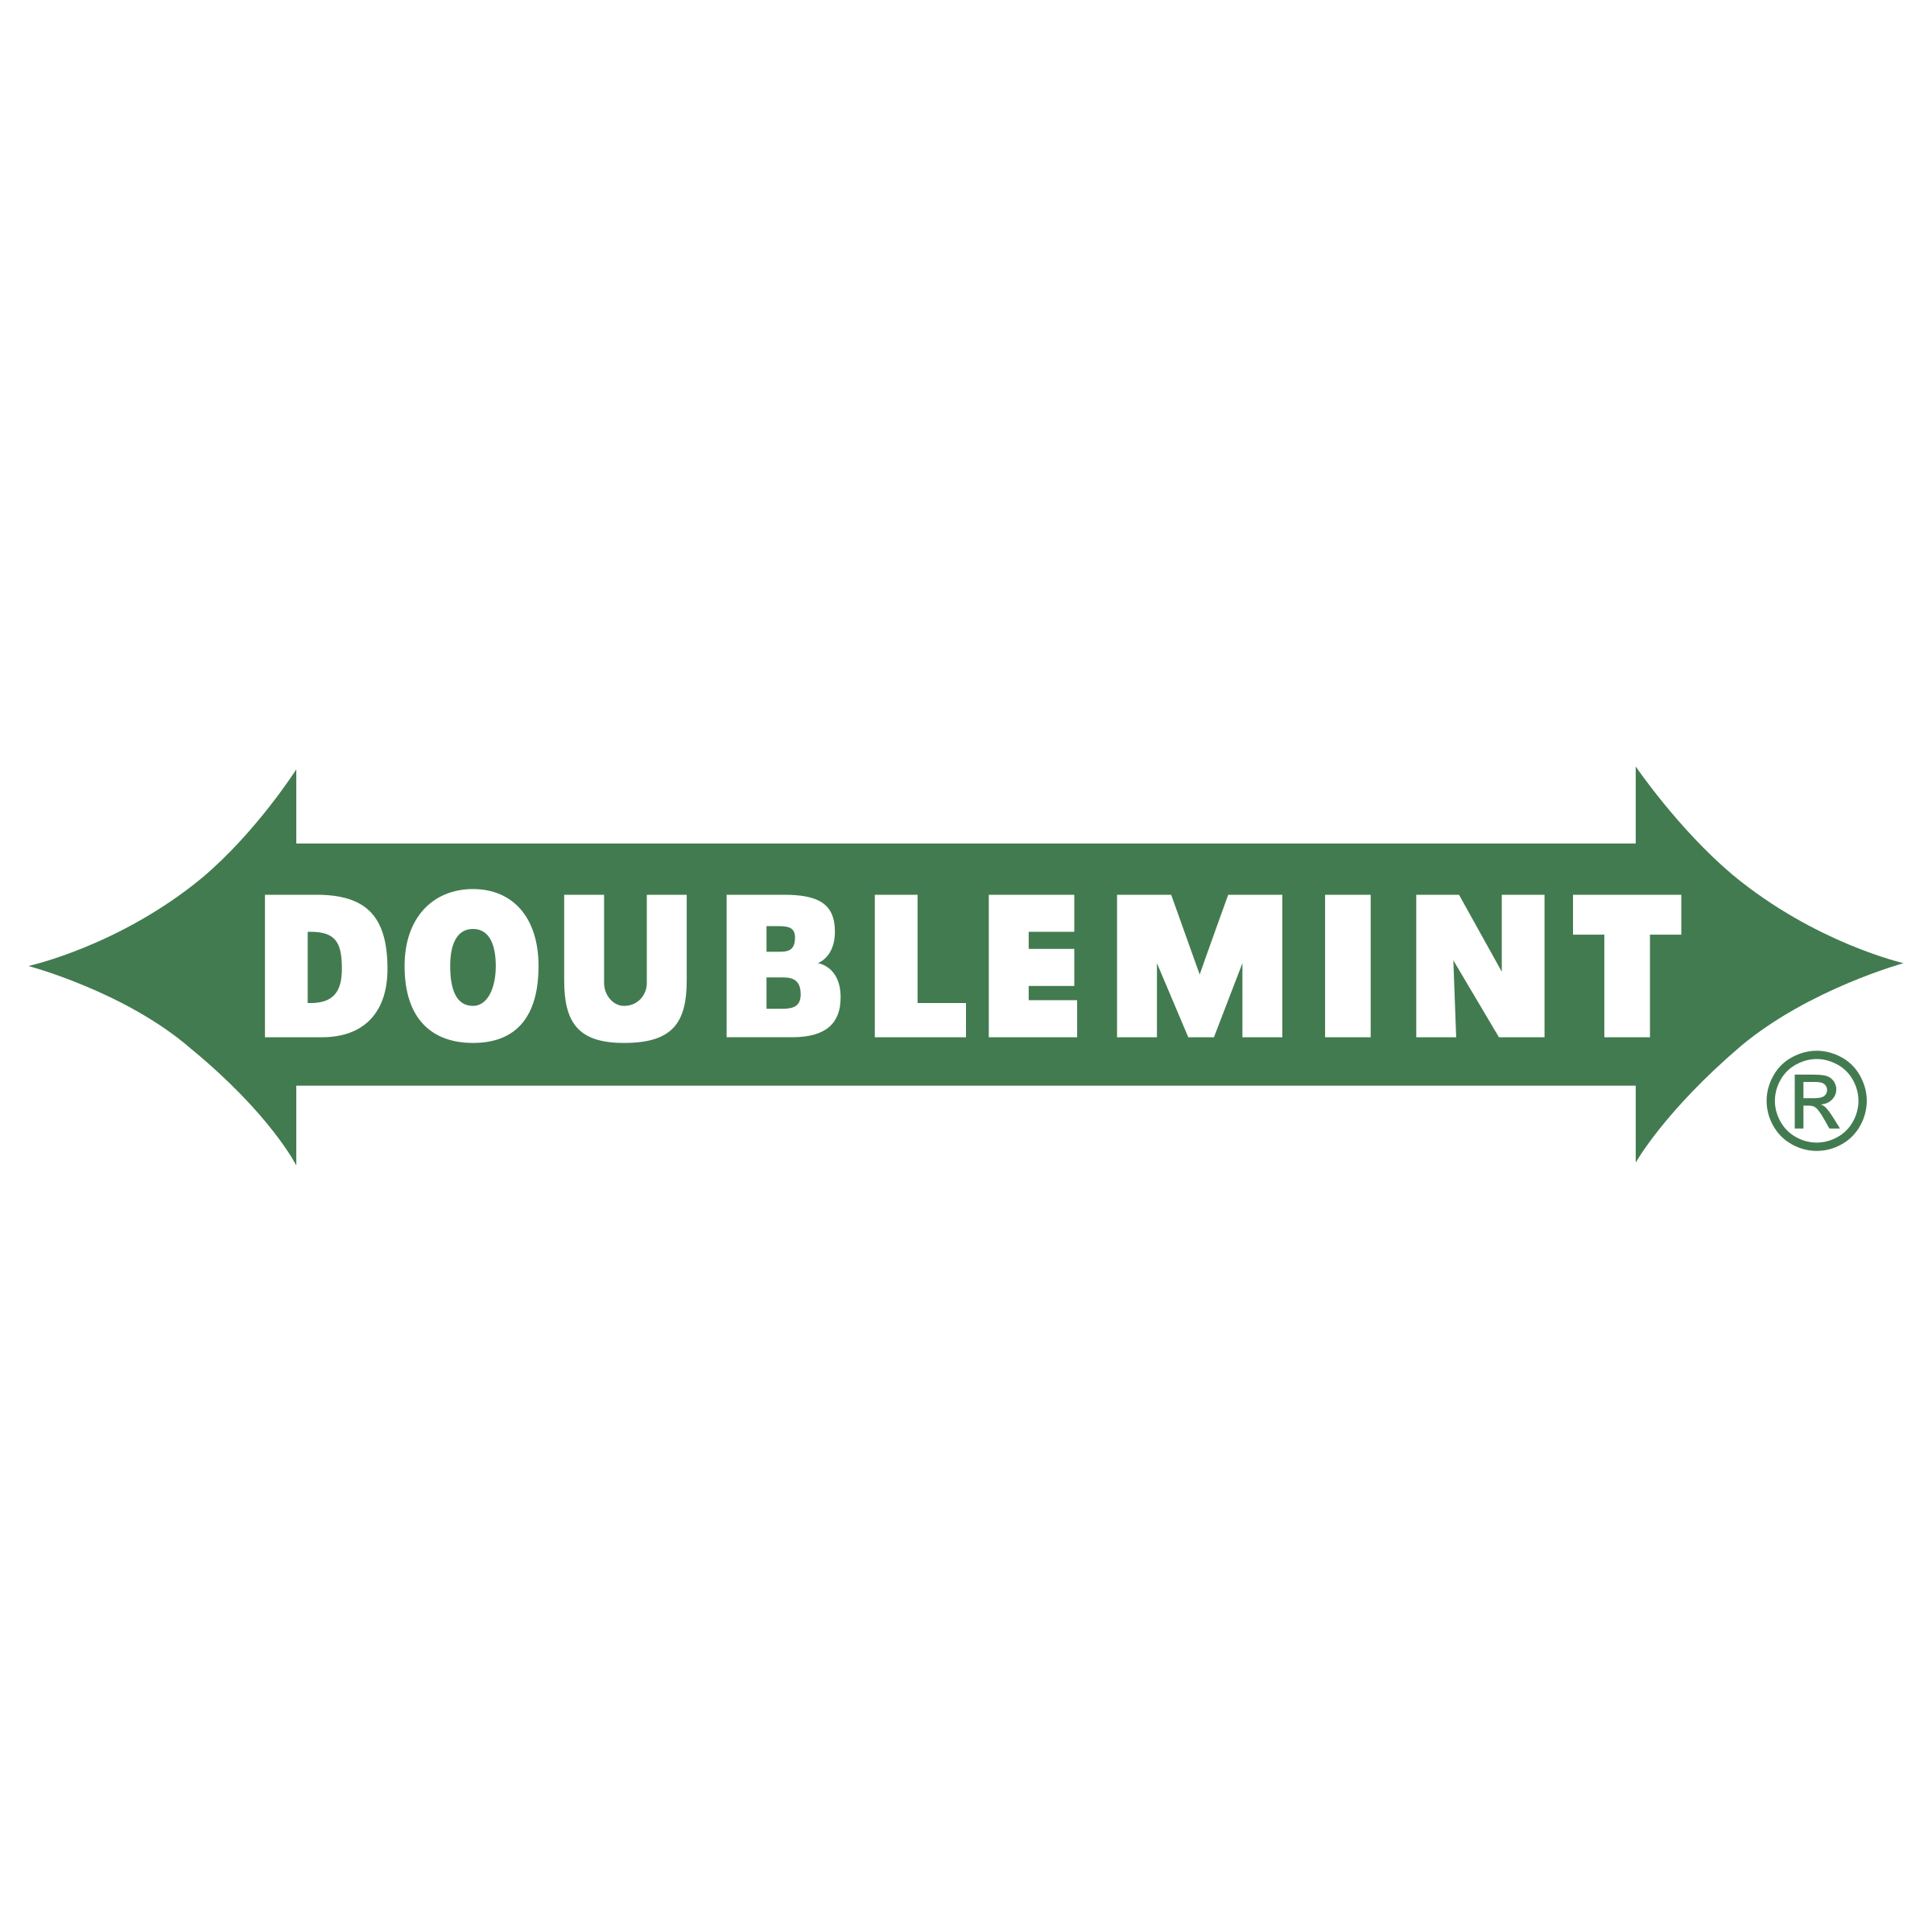 Doublemint Logo - Doublemint Logo PNG Transparent & SVG Vector